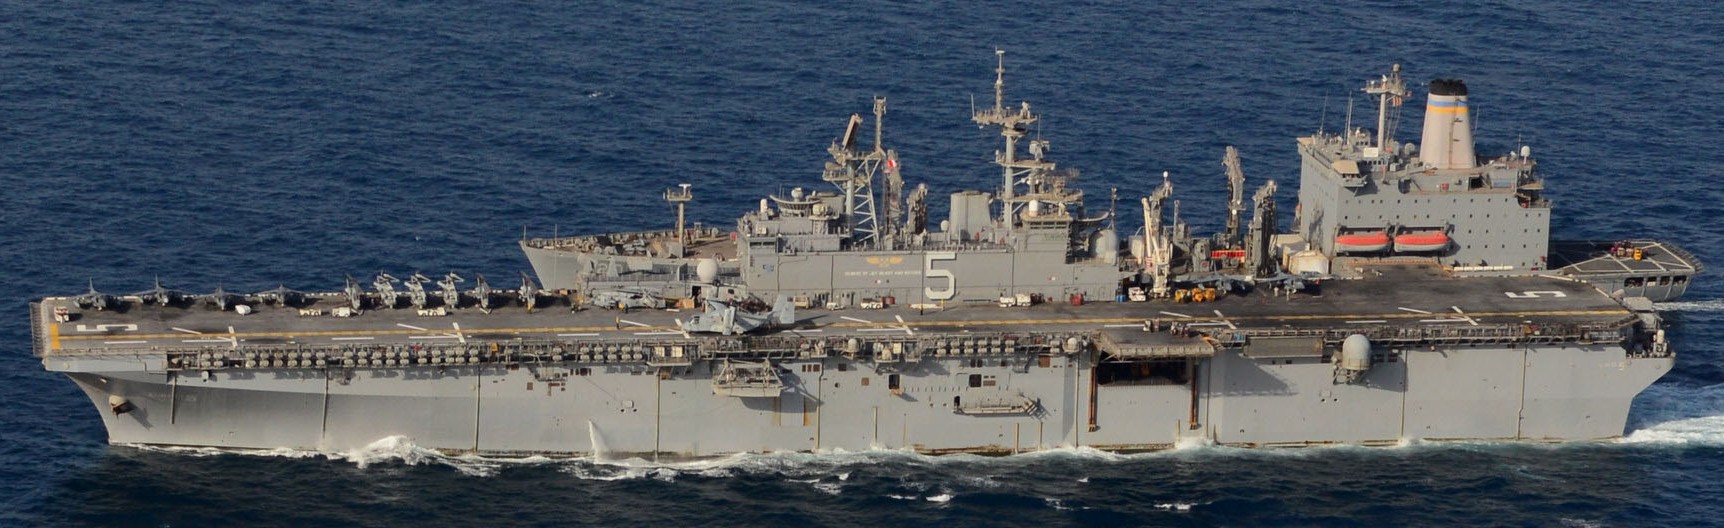 lhd-5 uss bataan wasp class amphibious assault ship dock landing helicopter us navy vmm-263 marines arabian gulf 98